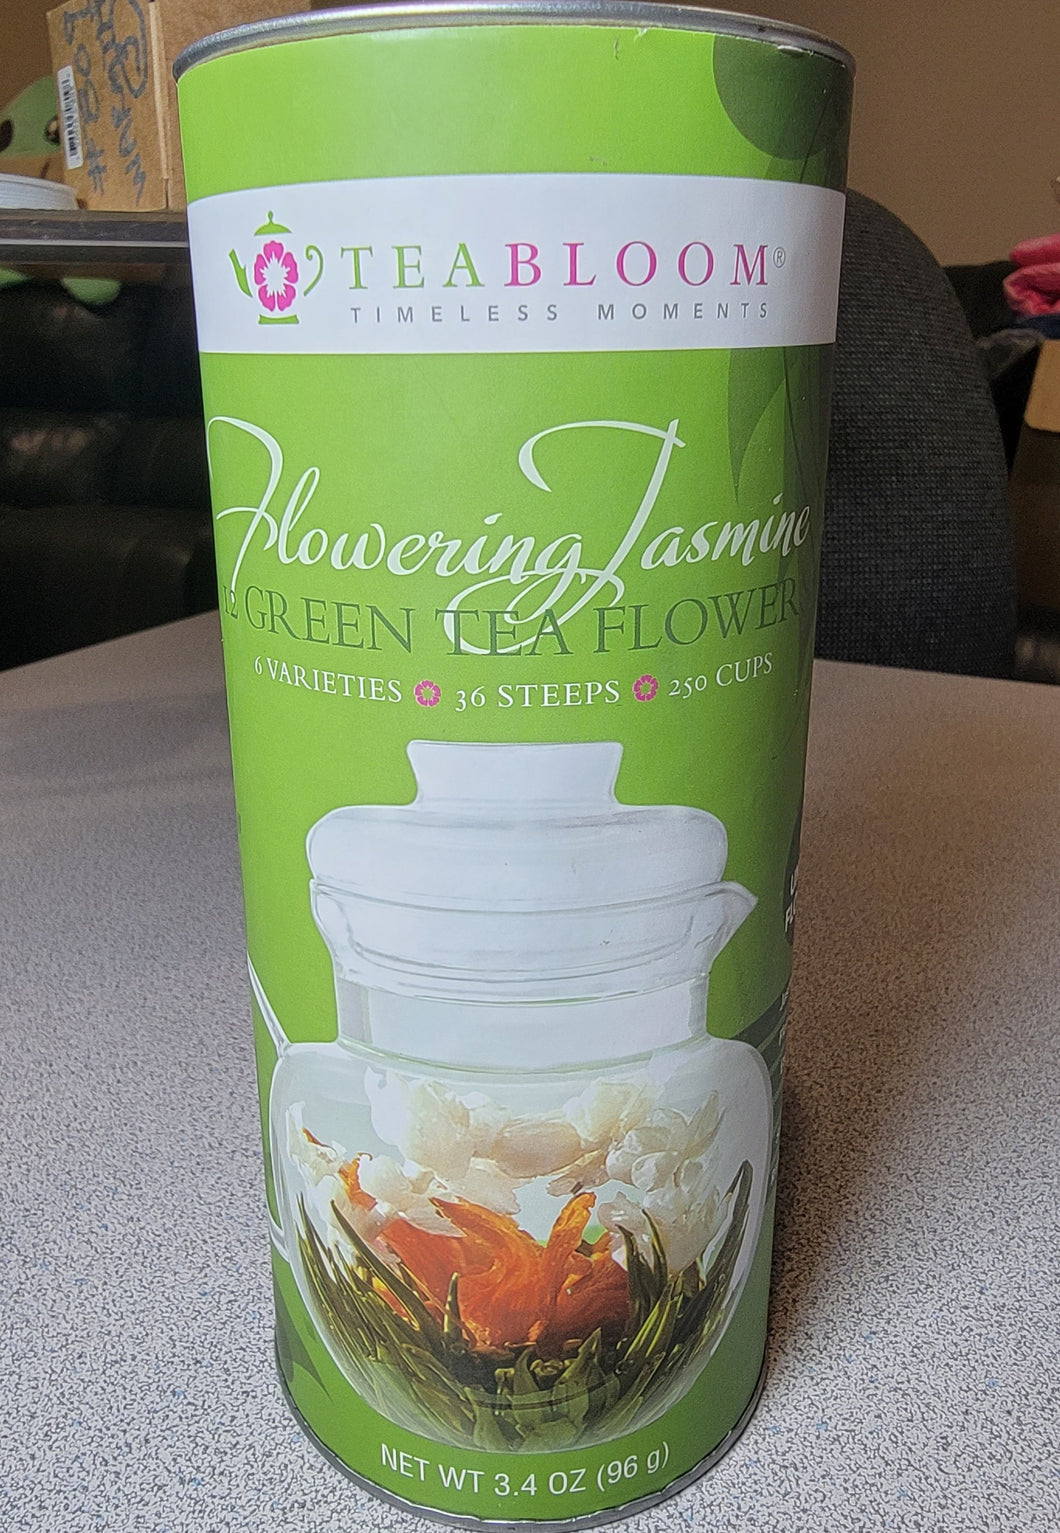 TeaBloom Flowering Jasmine Green Tea Flowers, 6 varieties, 36 Steeps, 250 Cups